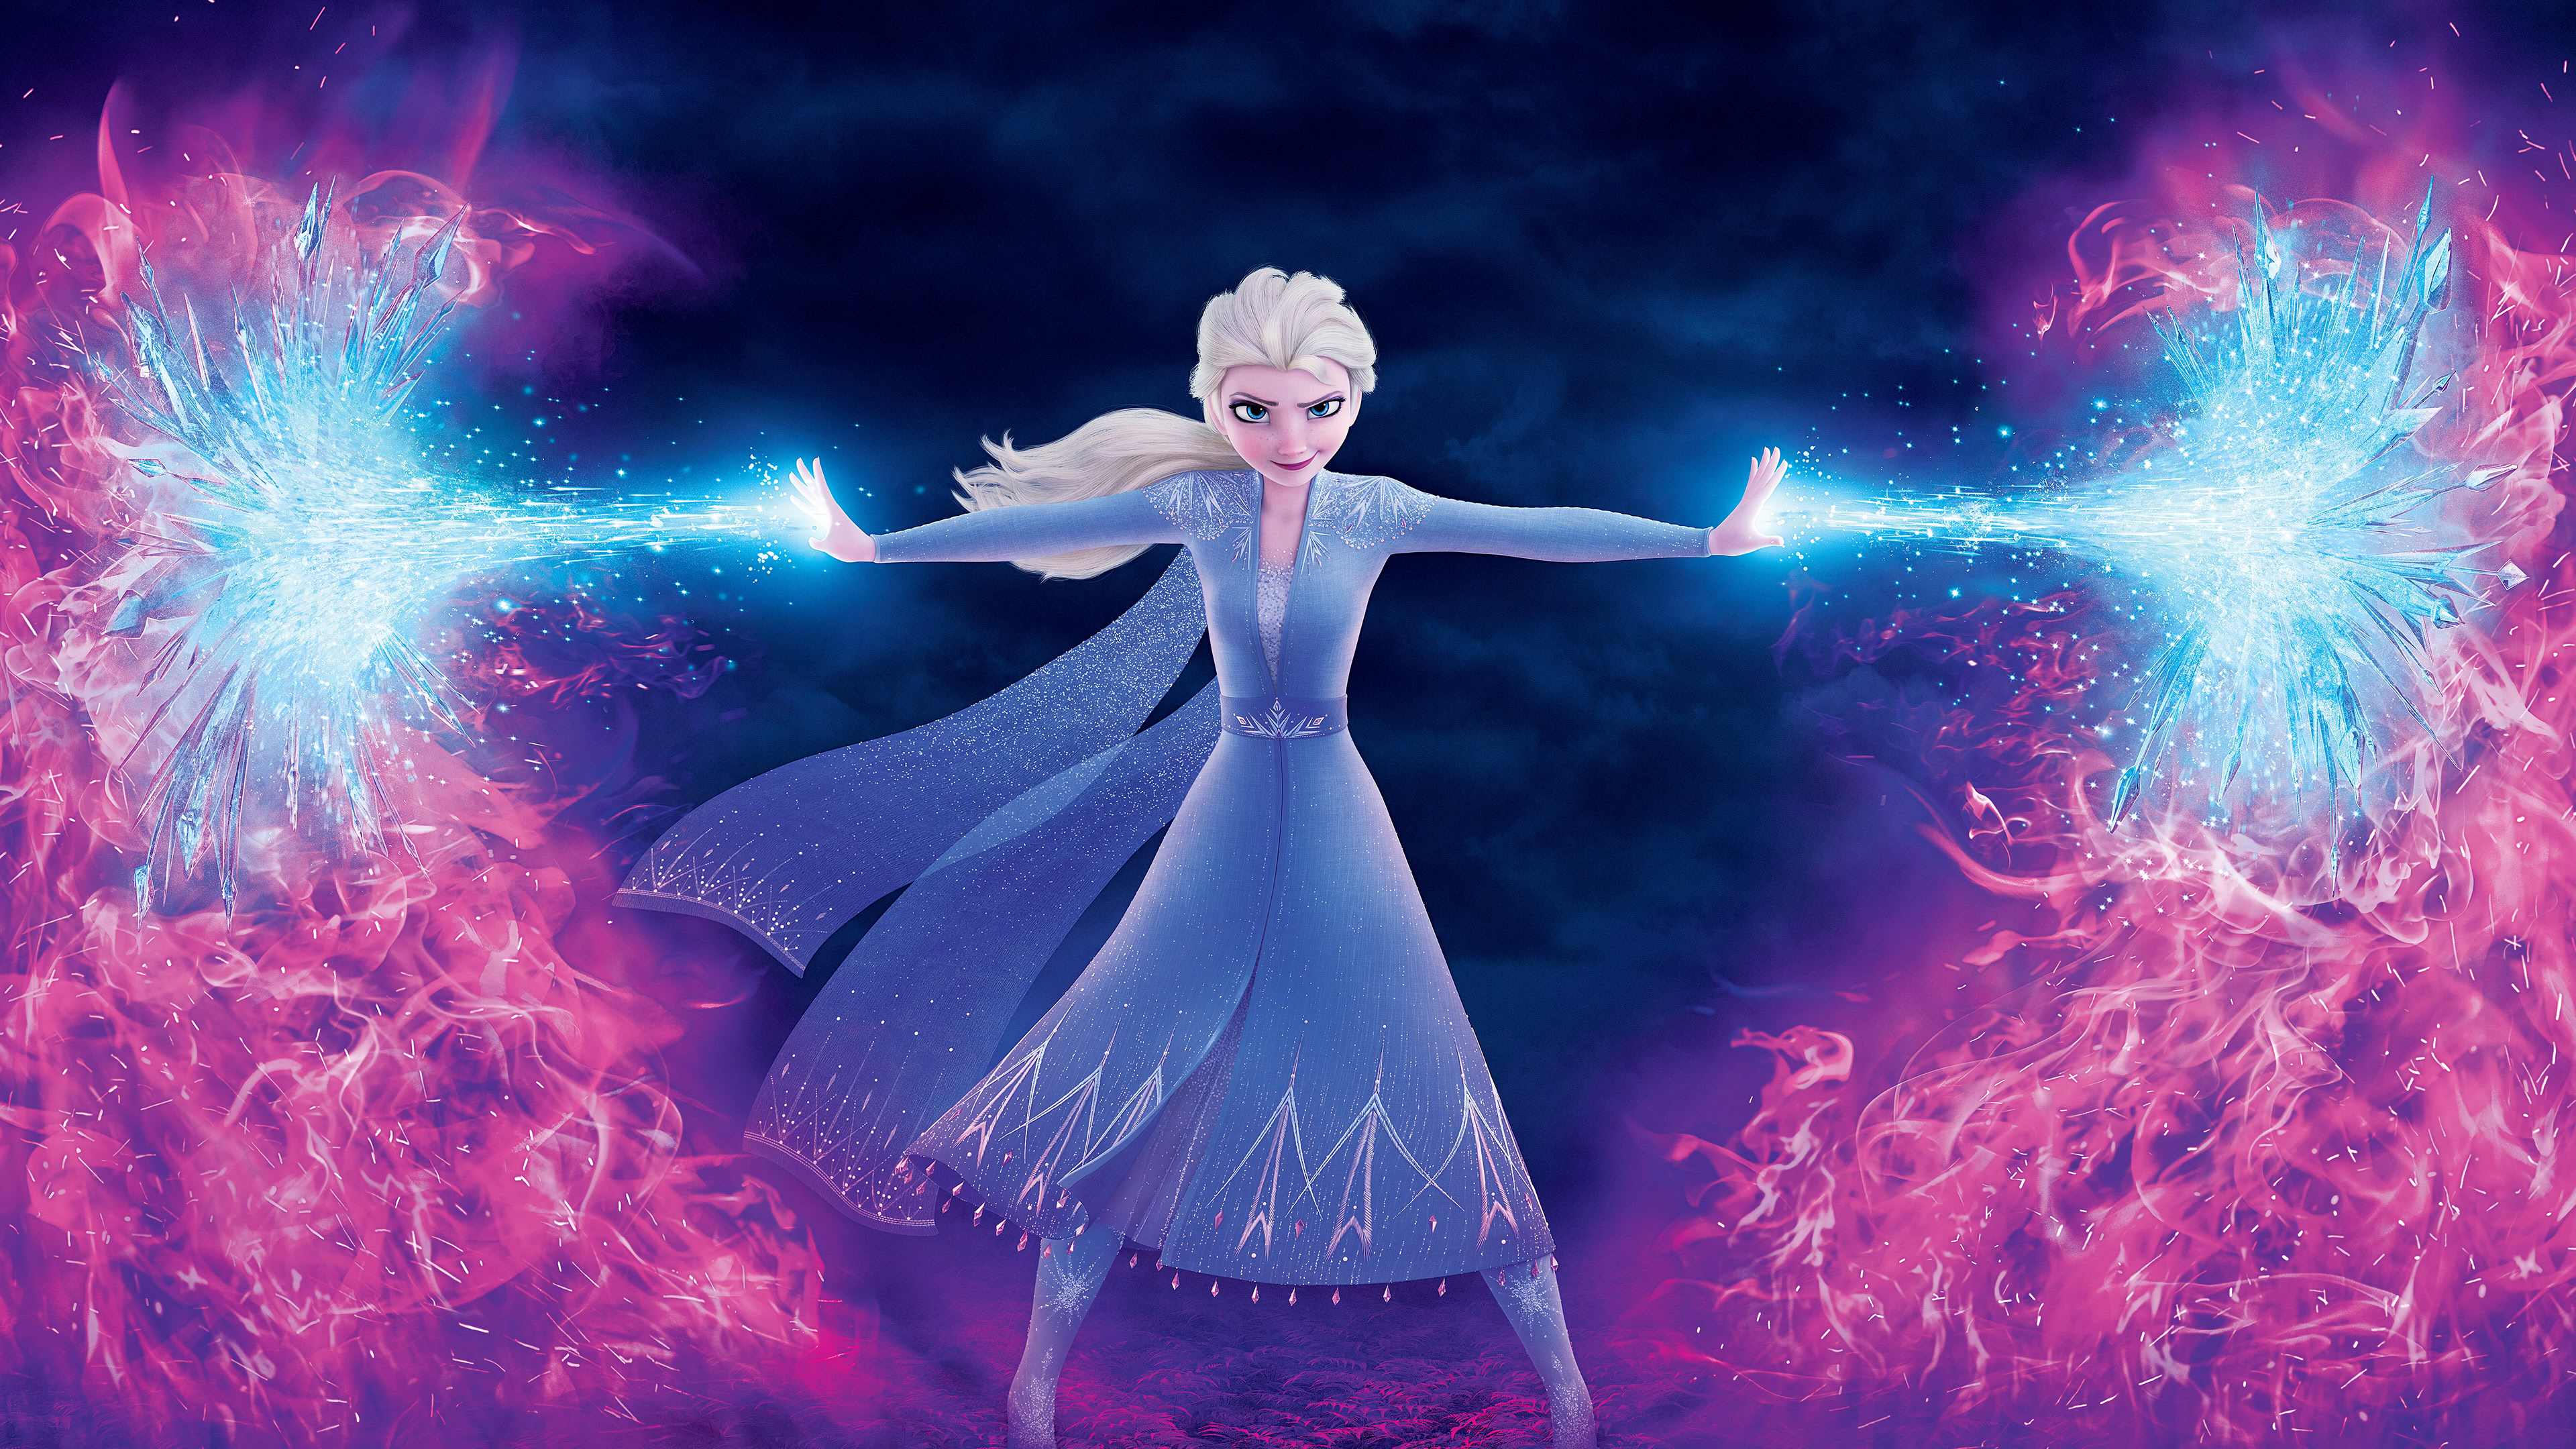 Frozen 2 Elsa Anna Poster Character 4K Wallpaper 7436